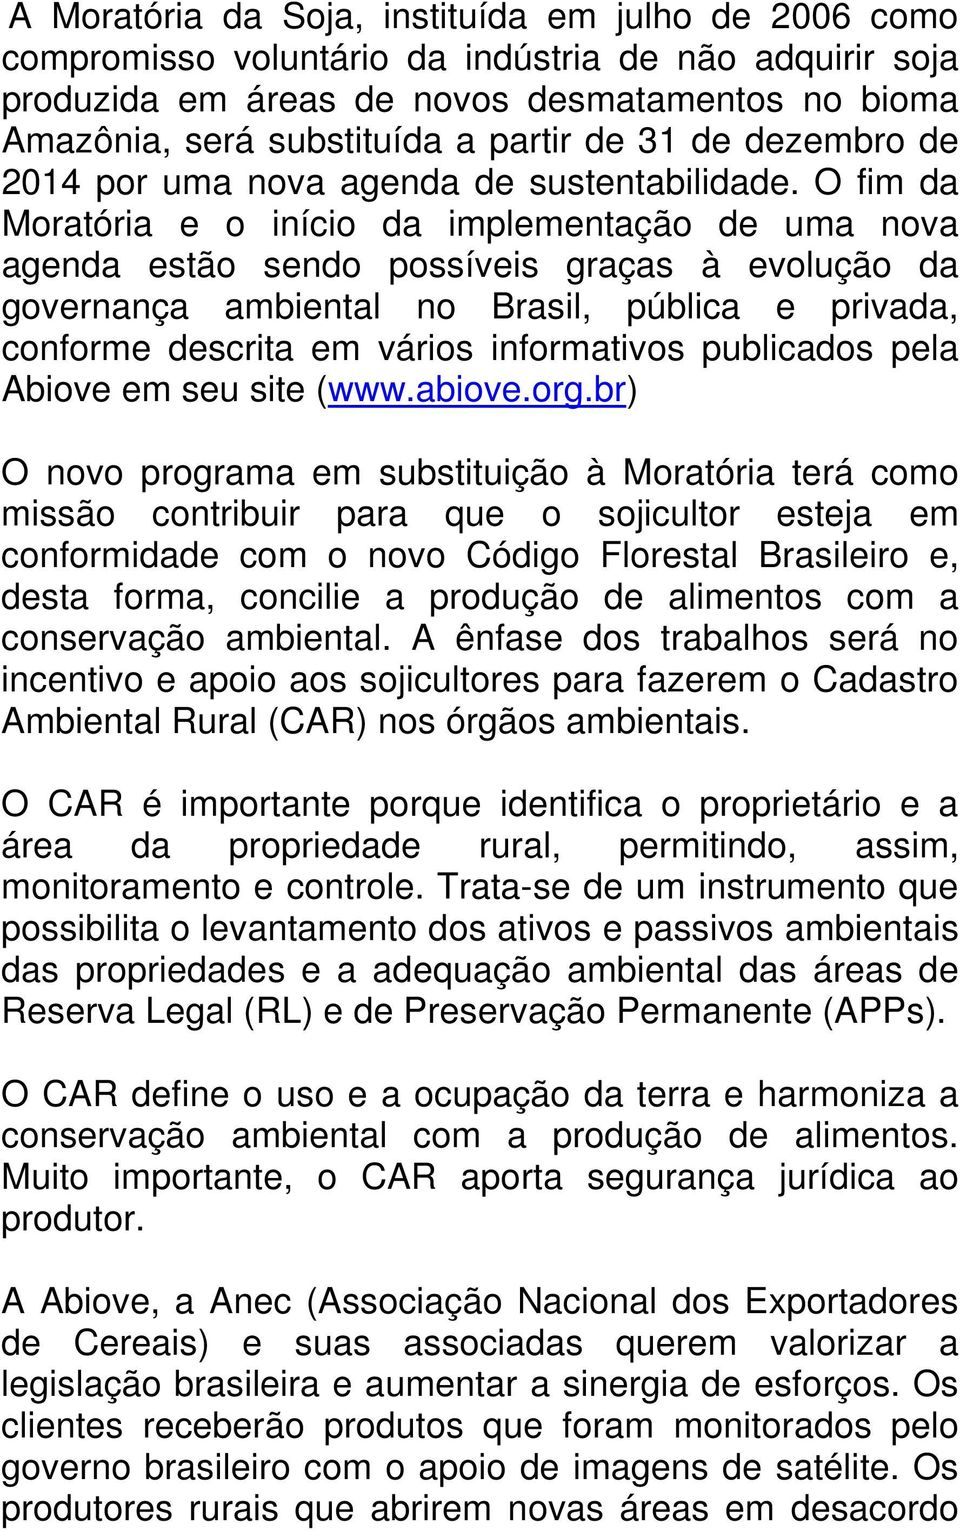 O fim da Moratória e o início da implementação de uma nova agenda estão sendo possíveis graças à evolução da governança ambiental no Brasil, pública e privada, conforme descrita em vários